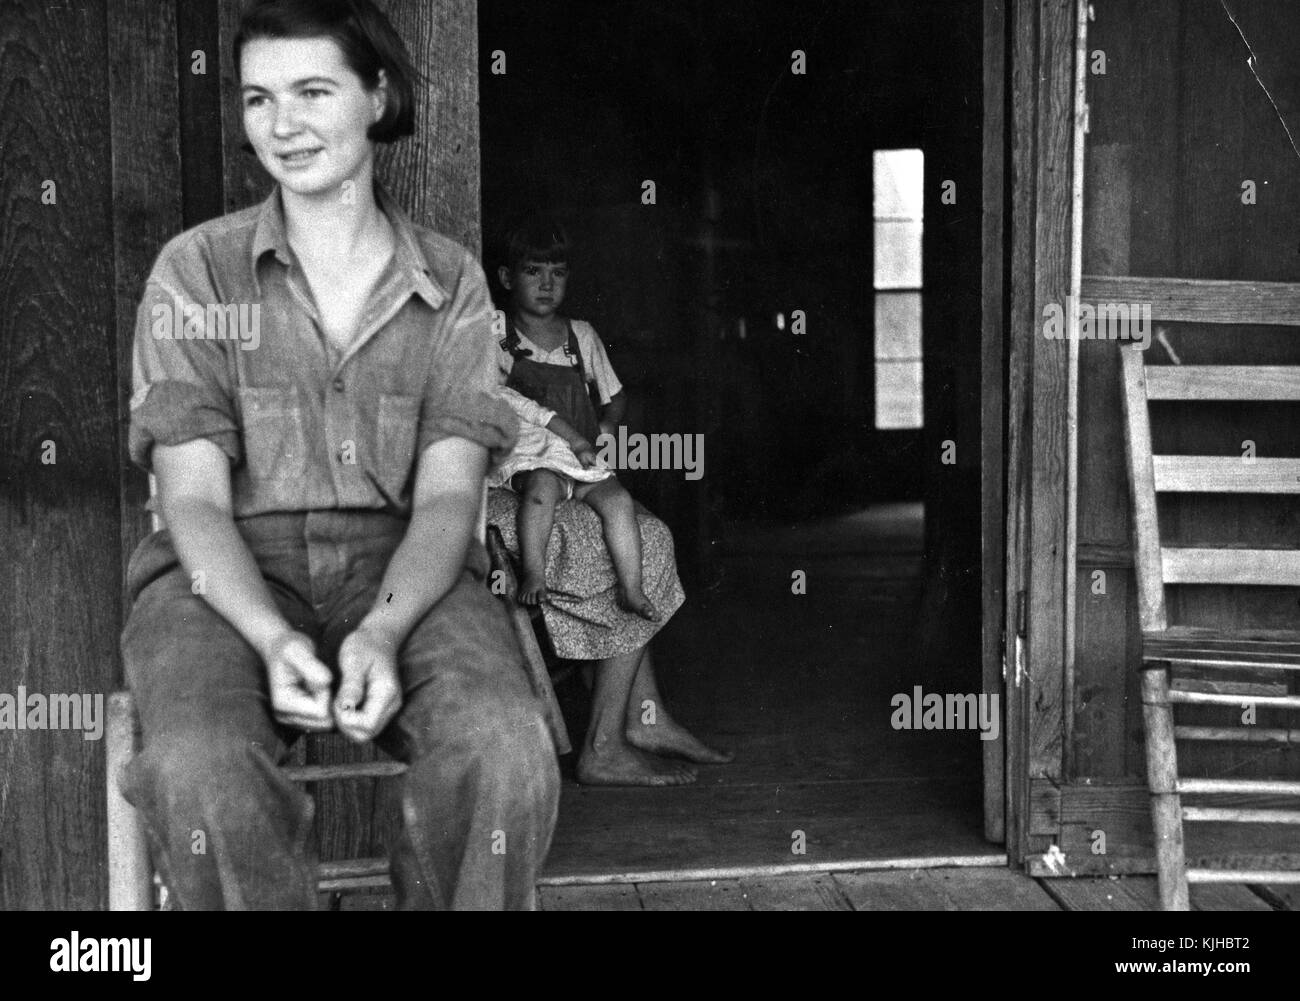 Photographie en noir et blanc d'une famille de l'époque de la dépression métayer, femme assise sur une chaise, au premier plan, une seconde femme tenant deux petits enfants, derrière elle, à l'intérieur d'un bâtiment, de l'Arkansas, 1935. à partir de la bibliothèque publique de new york. Banque D'Images